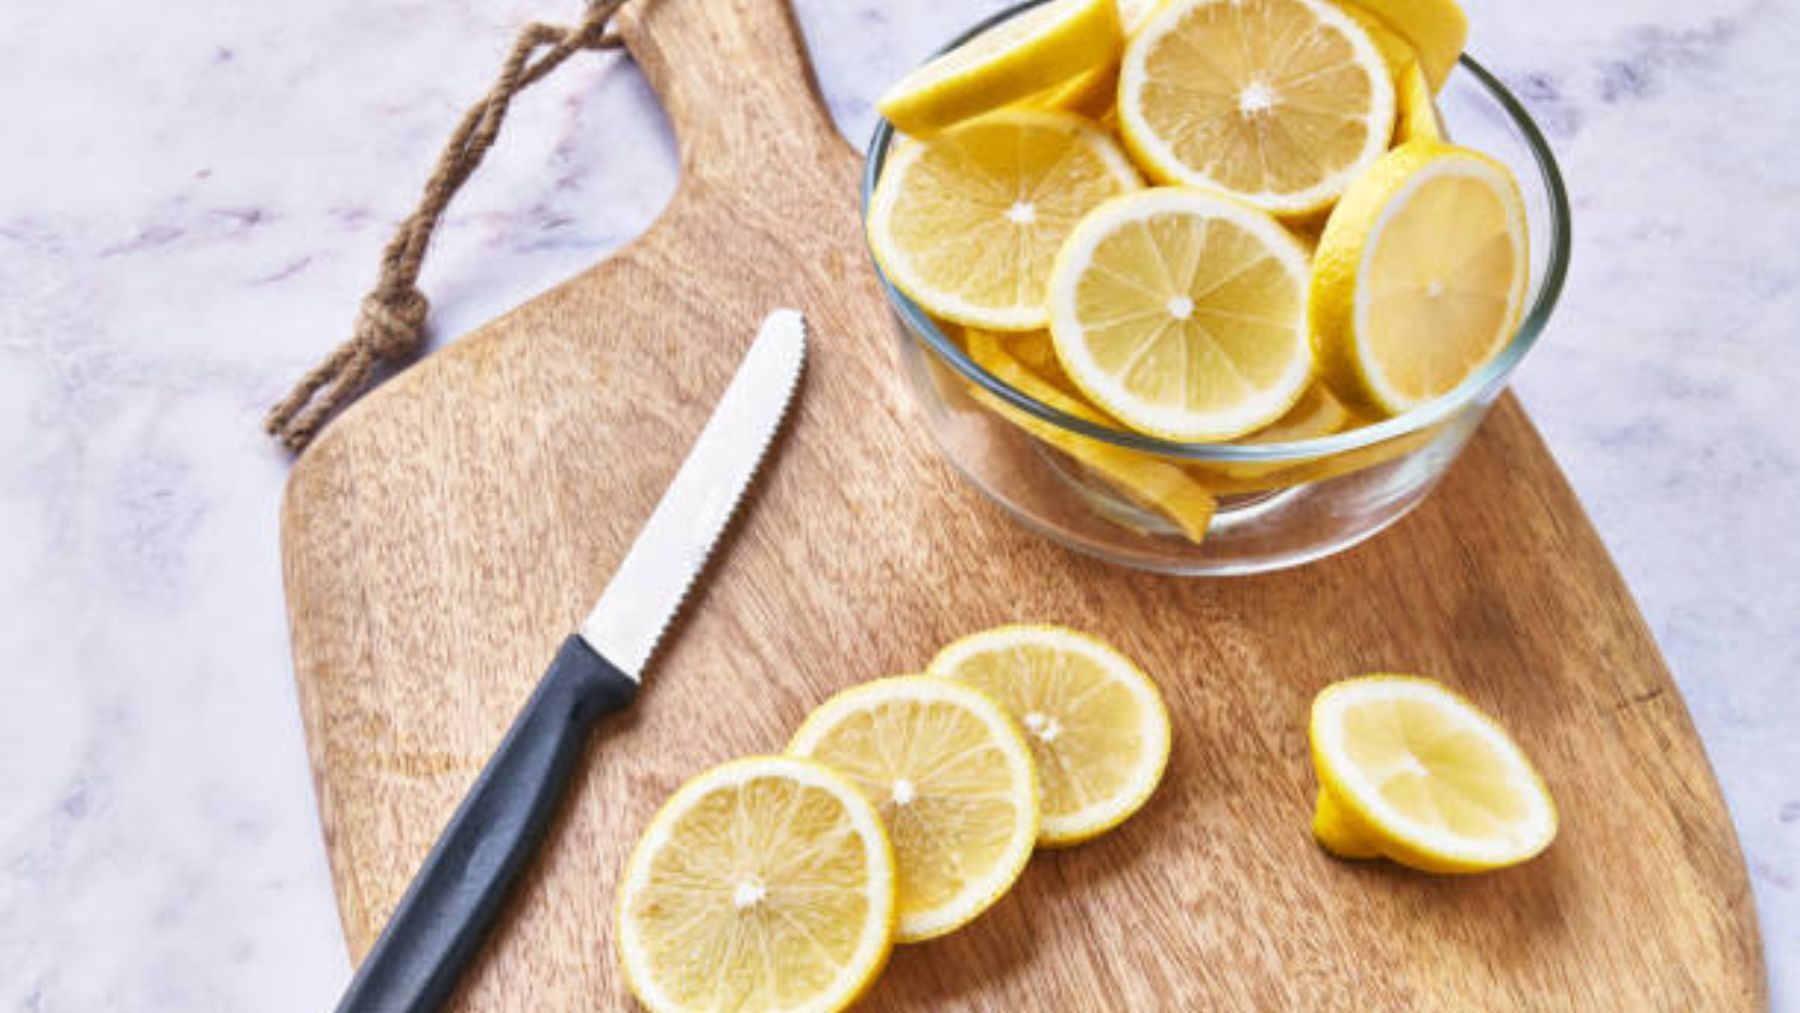 Cómo desinfectar tus verduras y frutas usando sal y limón?, VIRALES